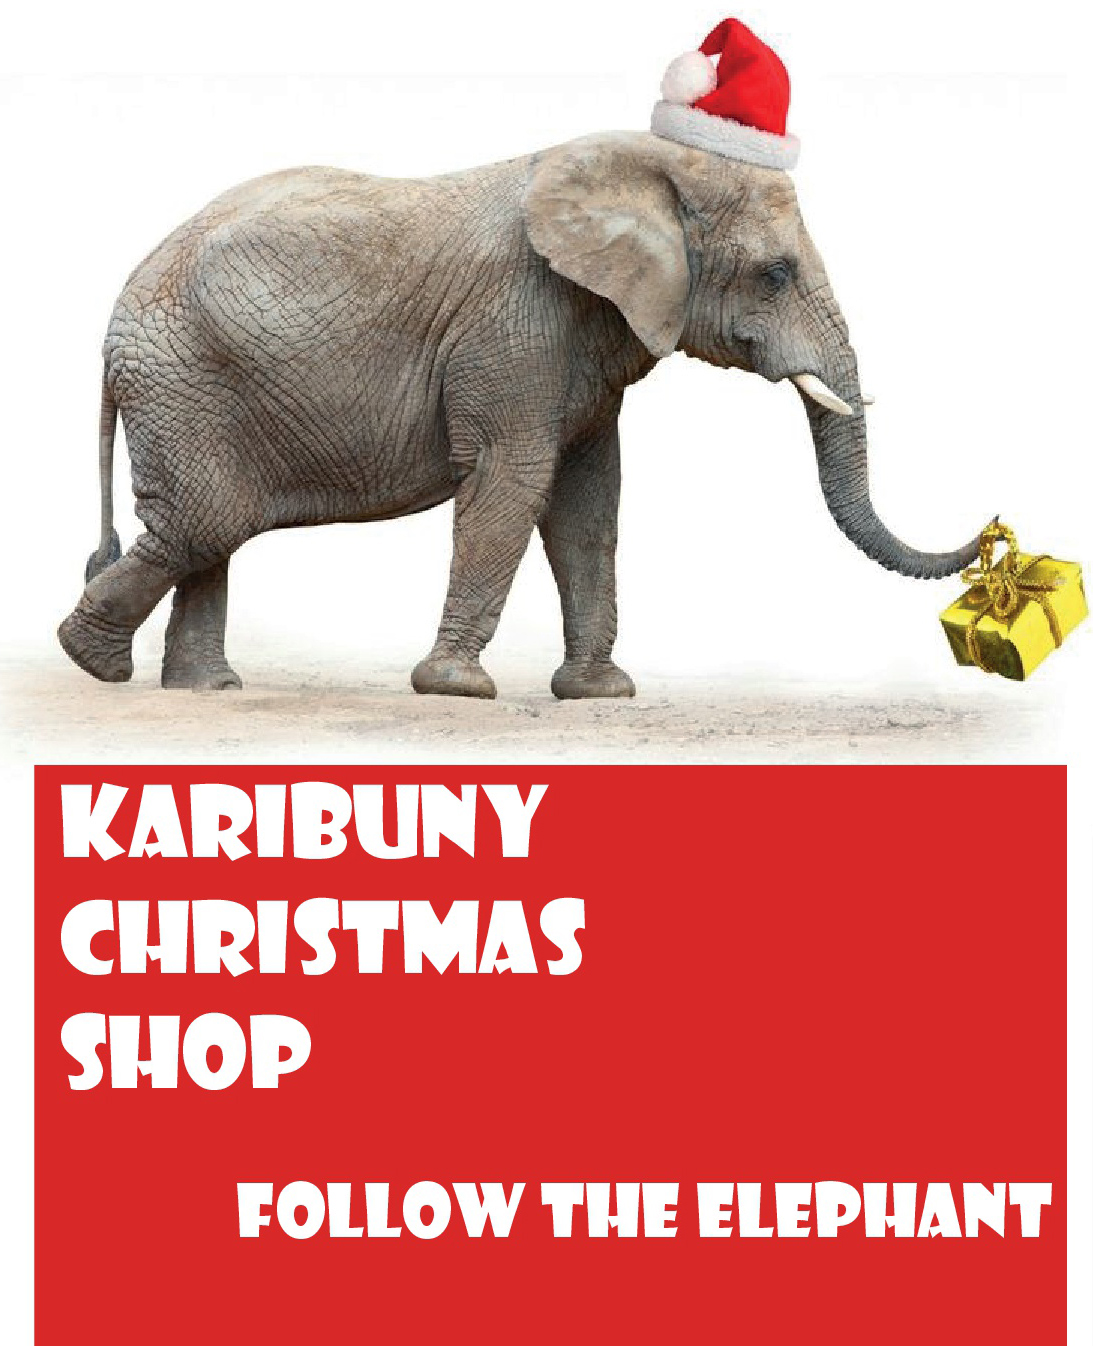 Karibuny Christmas shop